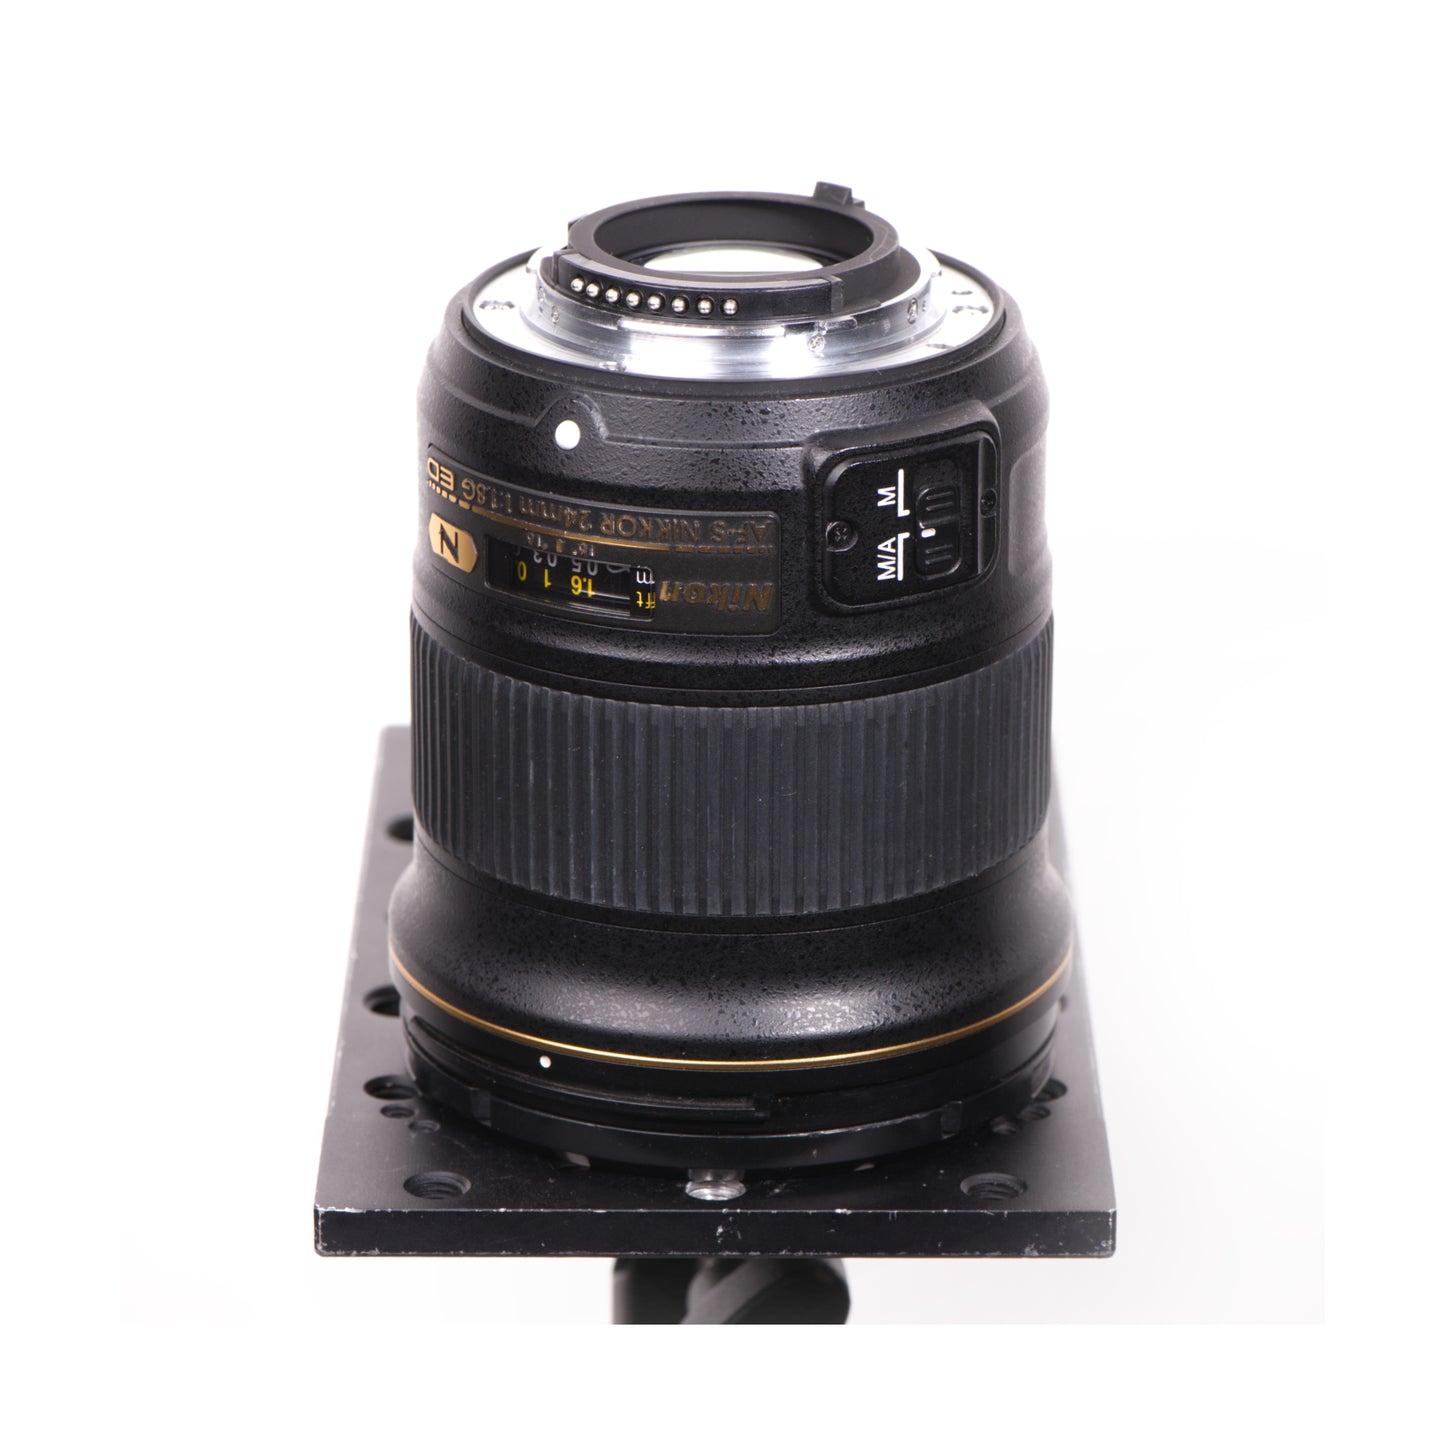 Nikon AF-S NIKKOR 24mm f/1.8G ED Lens - Ex Rental